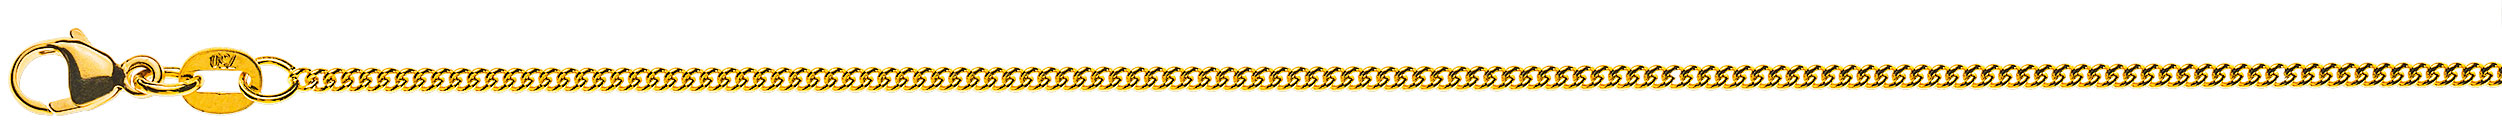 AURONOS Prestige Collier en or jaune 18K chaîne blindée ronde 38cm 1.6mm